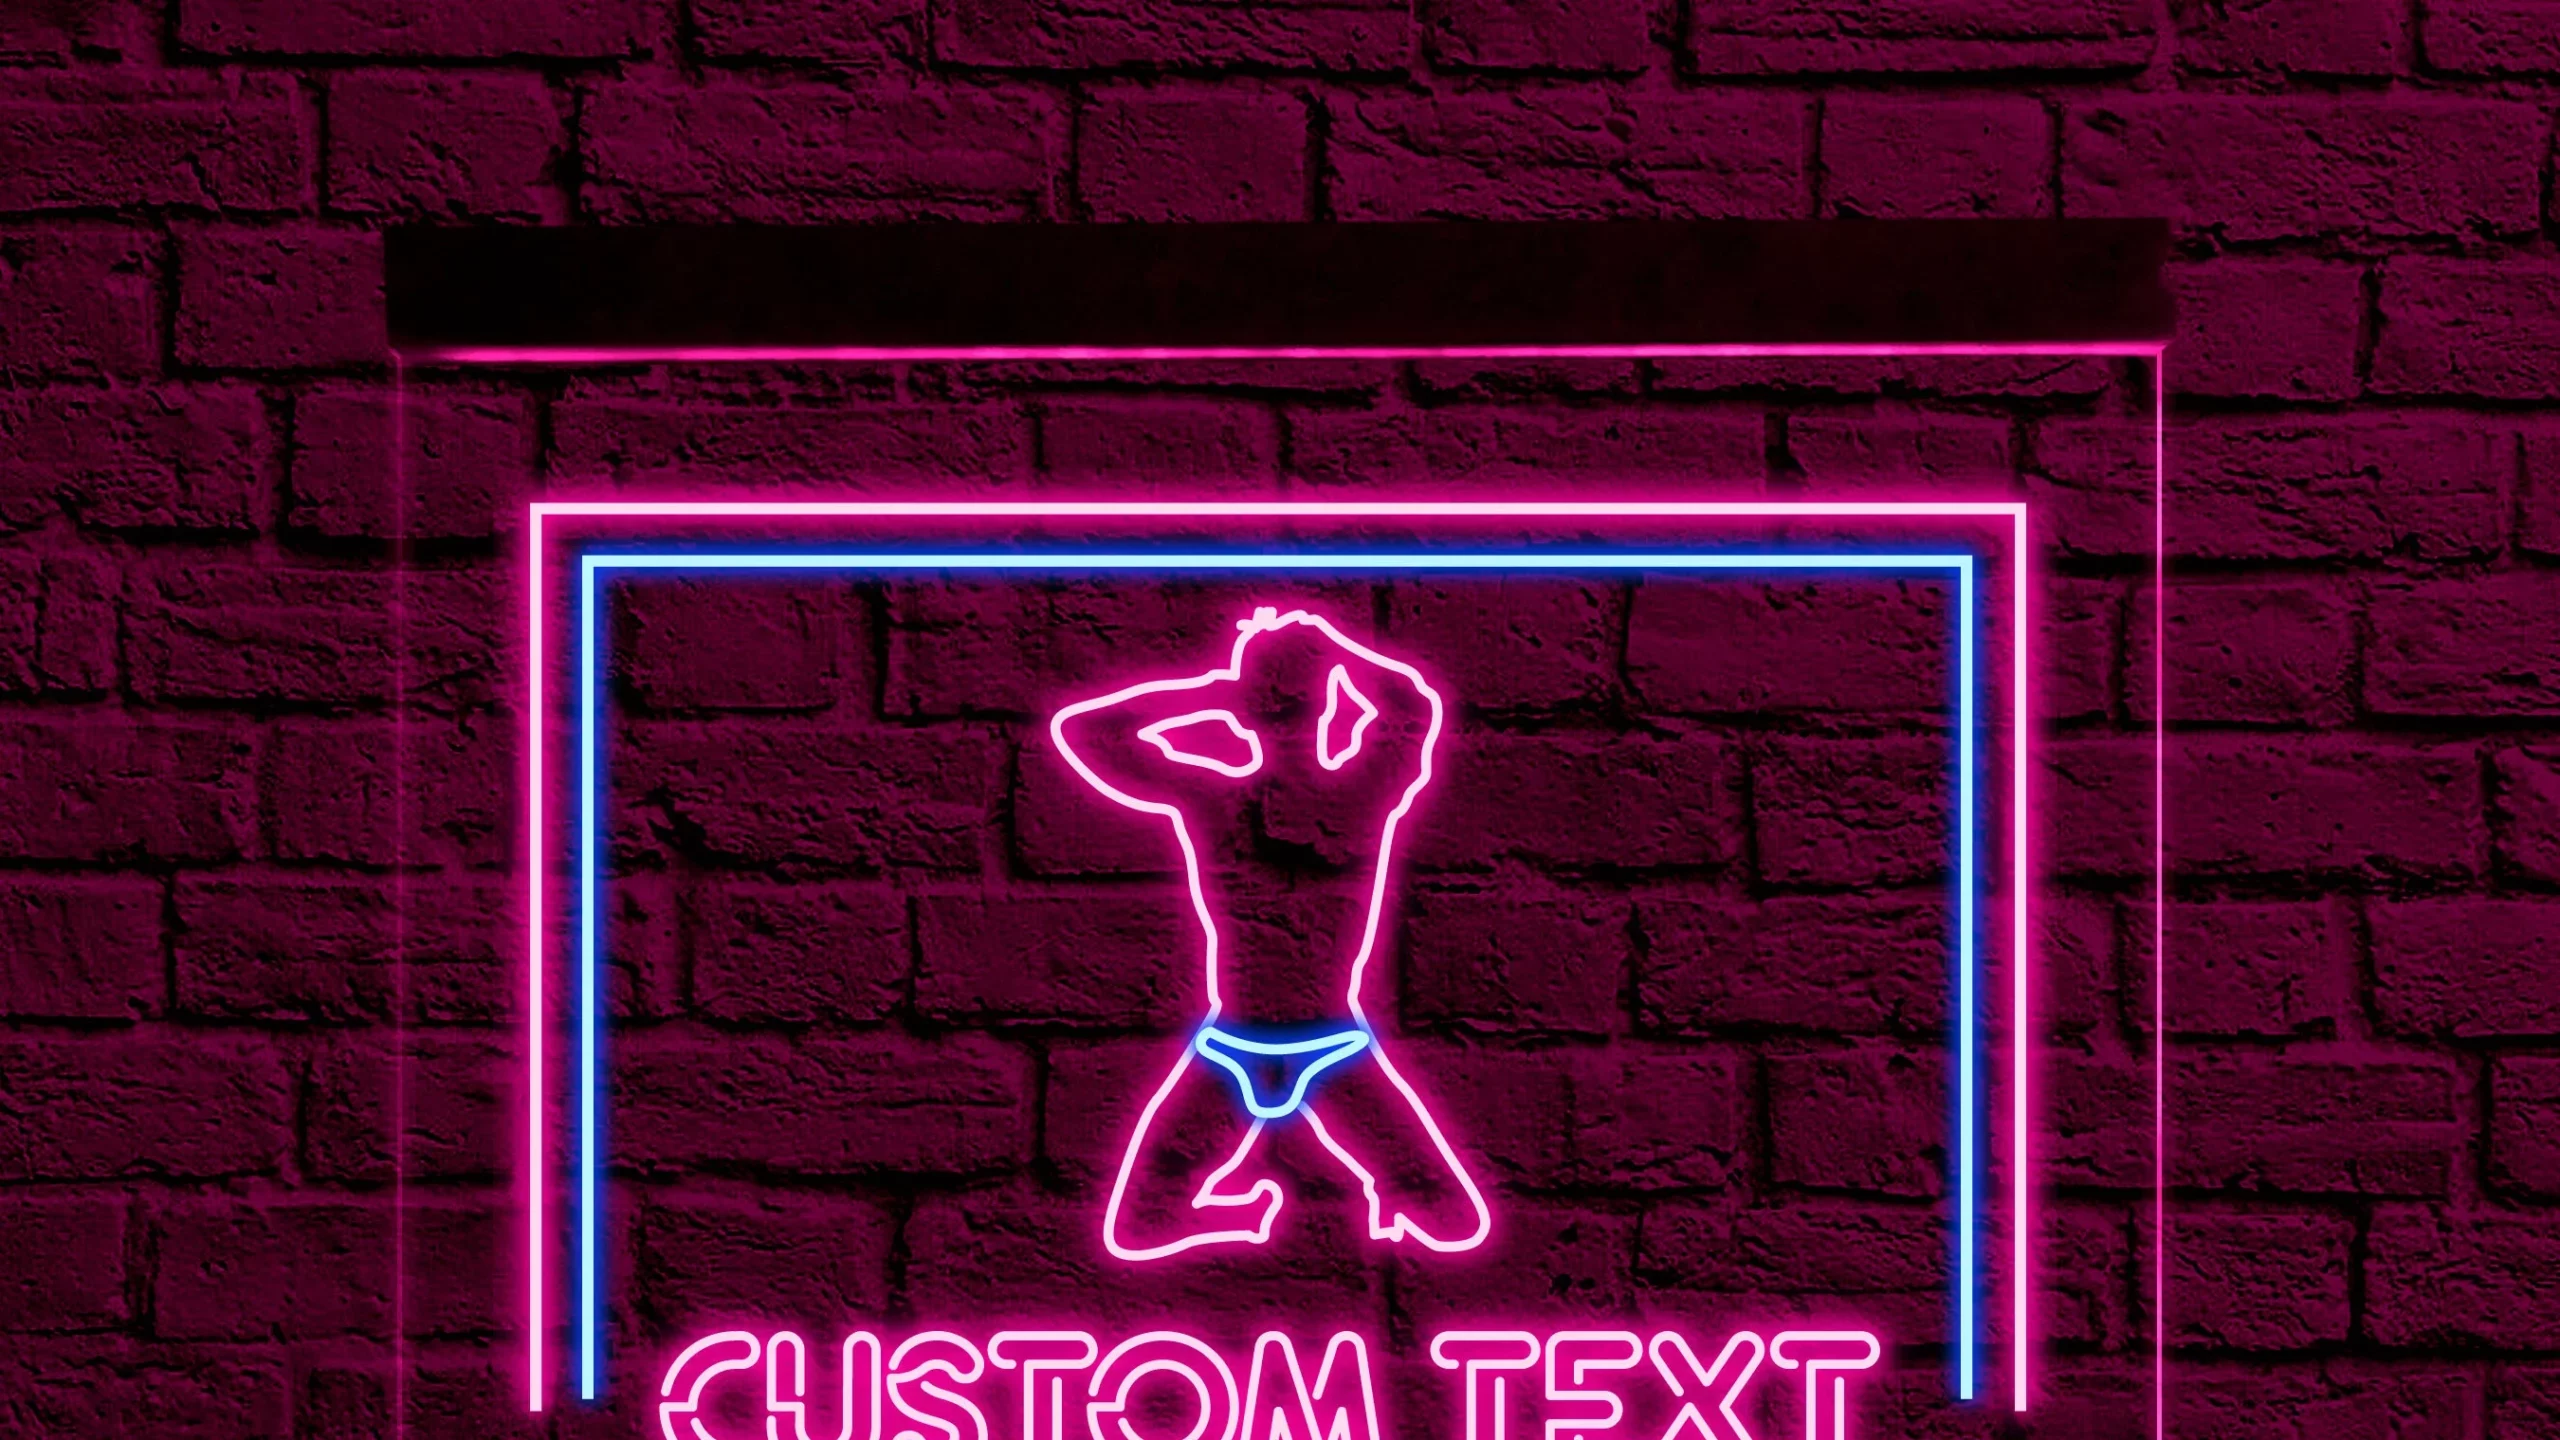 A neon strip club sign